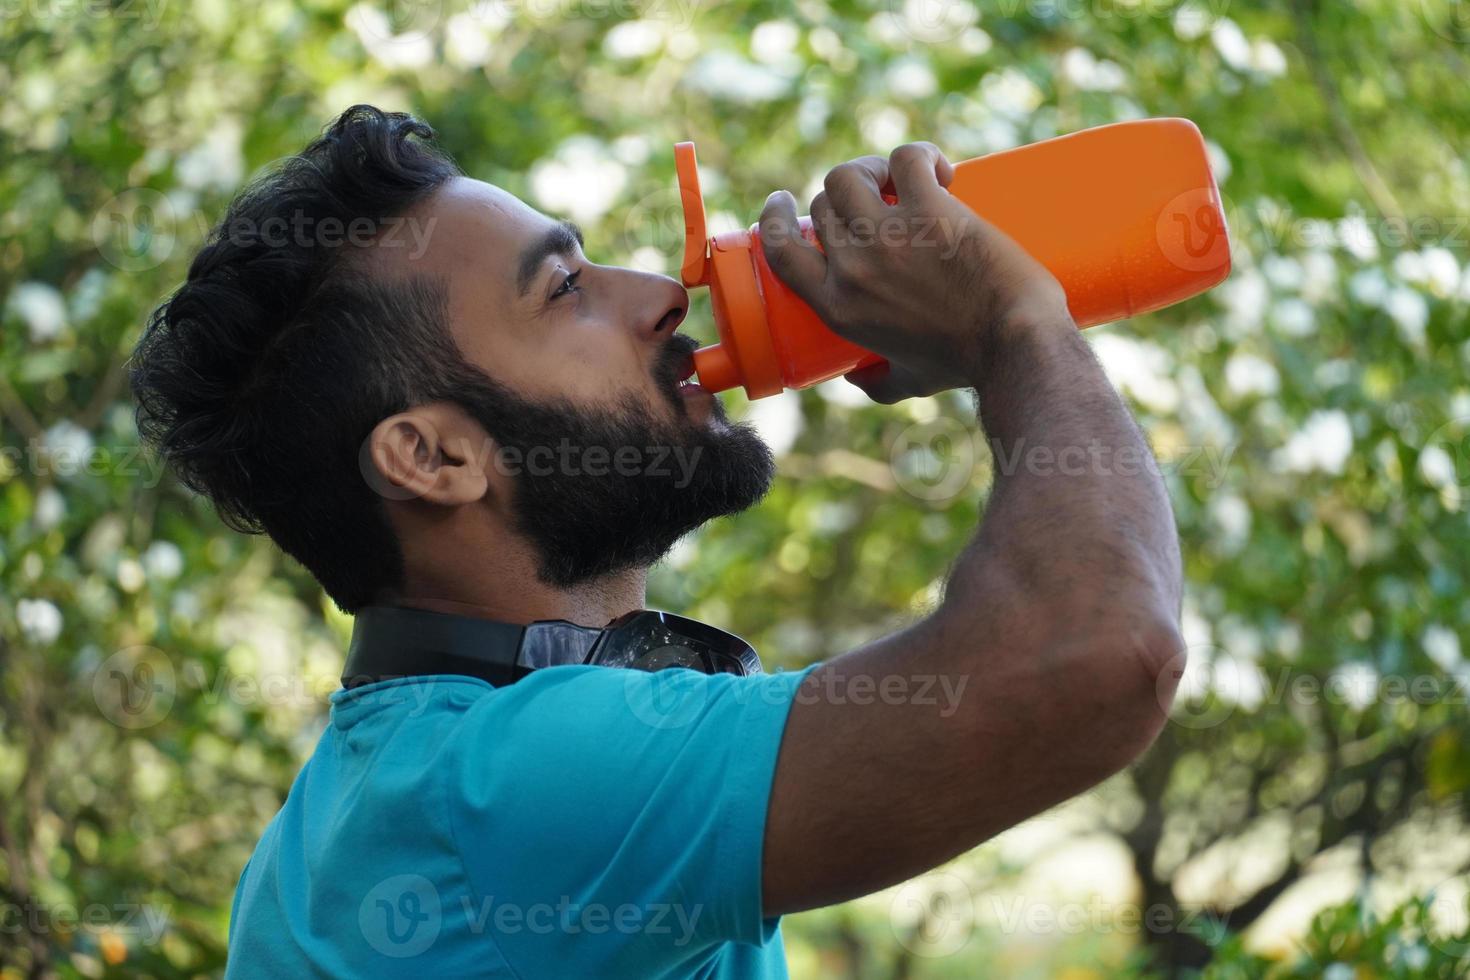 homem saudável com bebida de proteína em shaker no parque de manhã foto